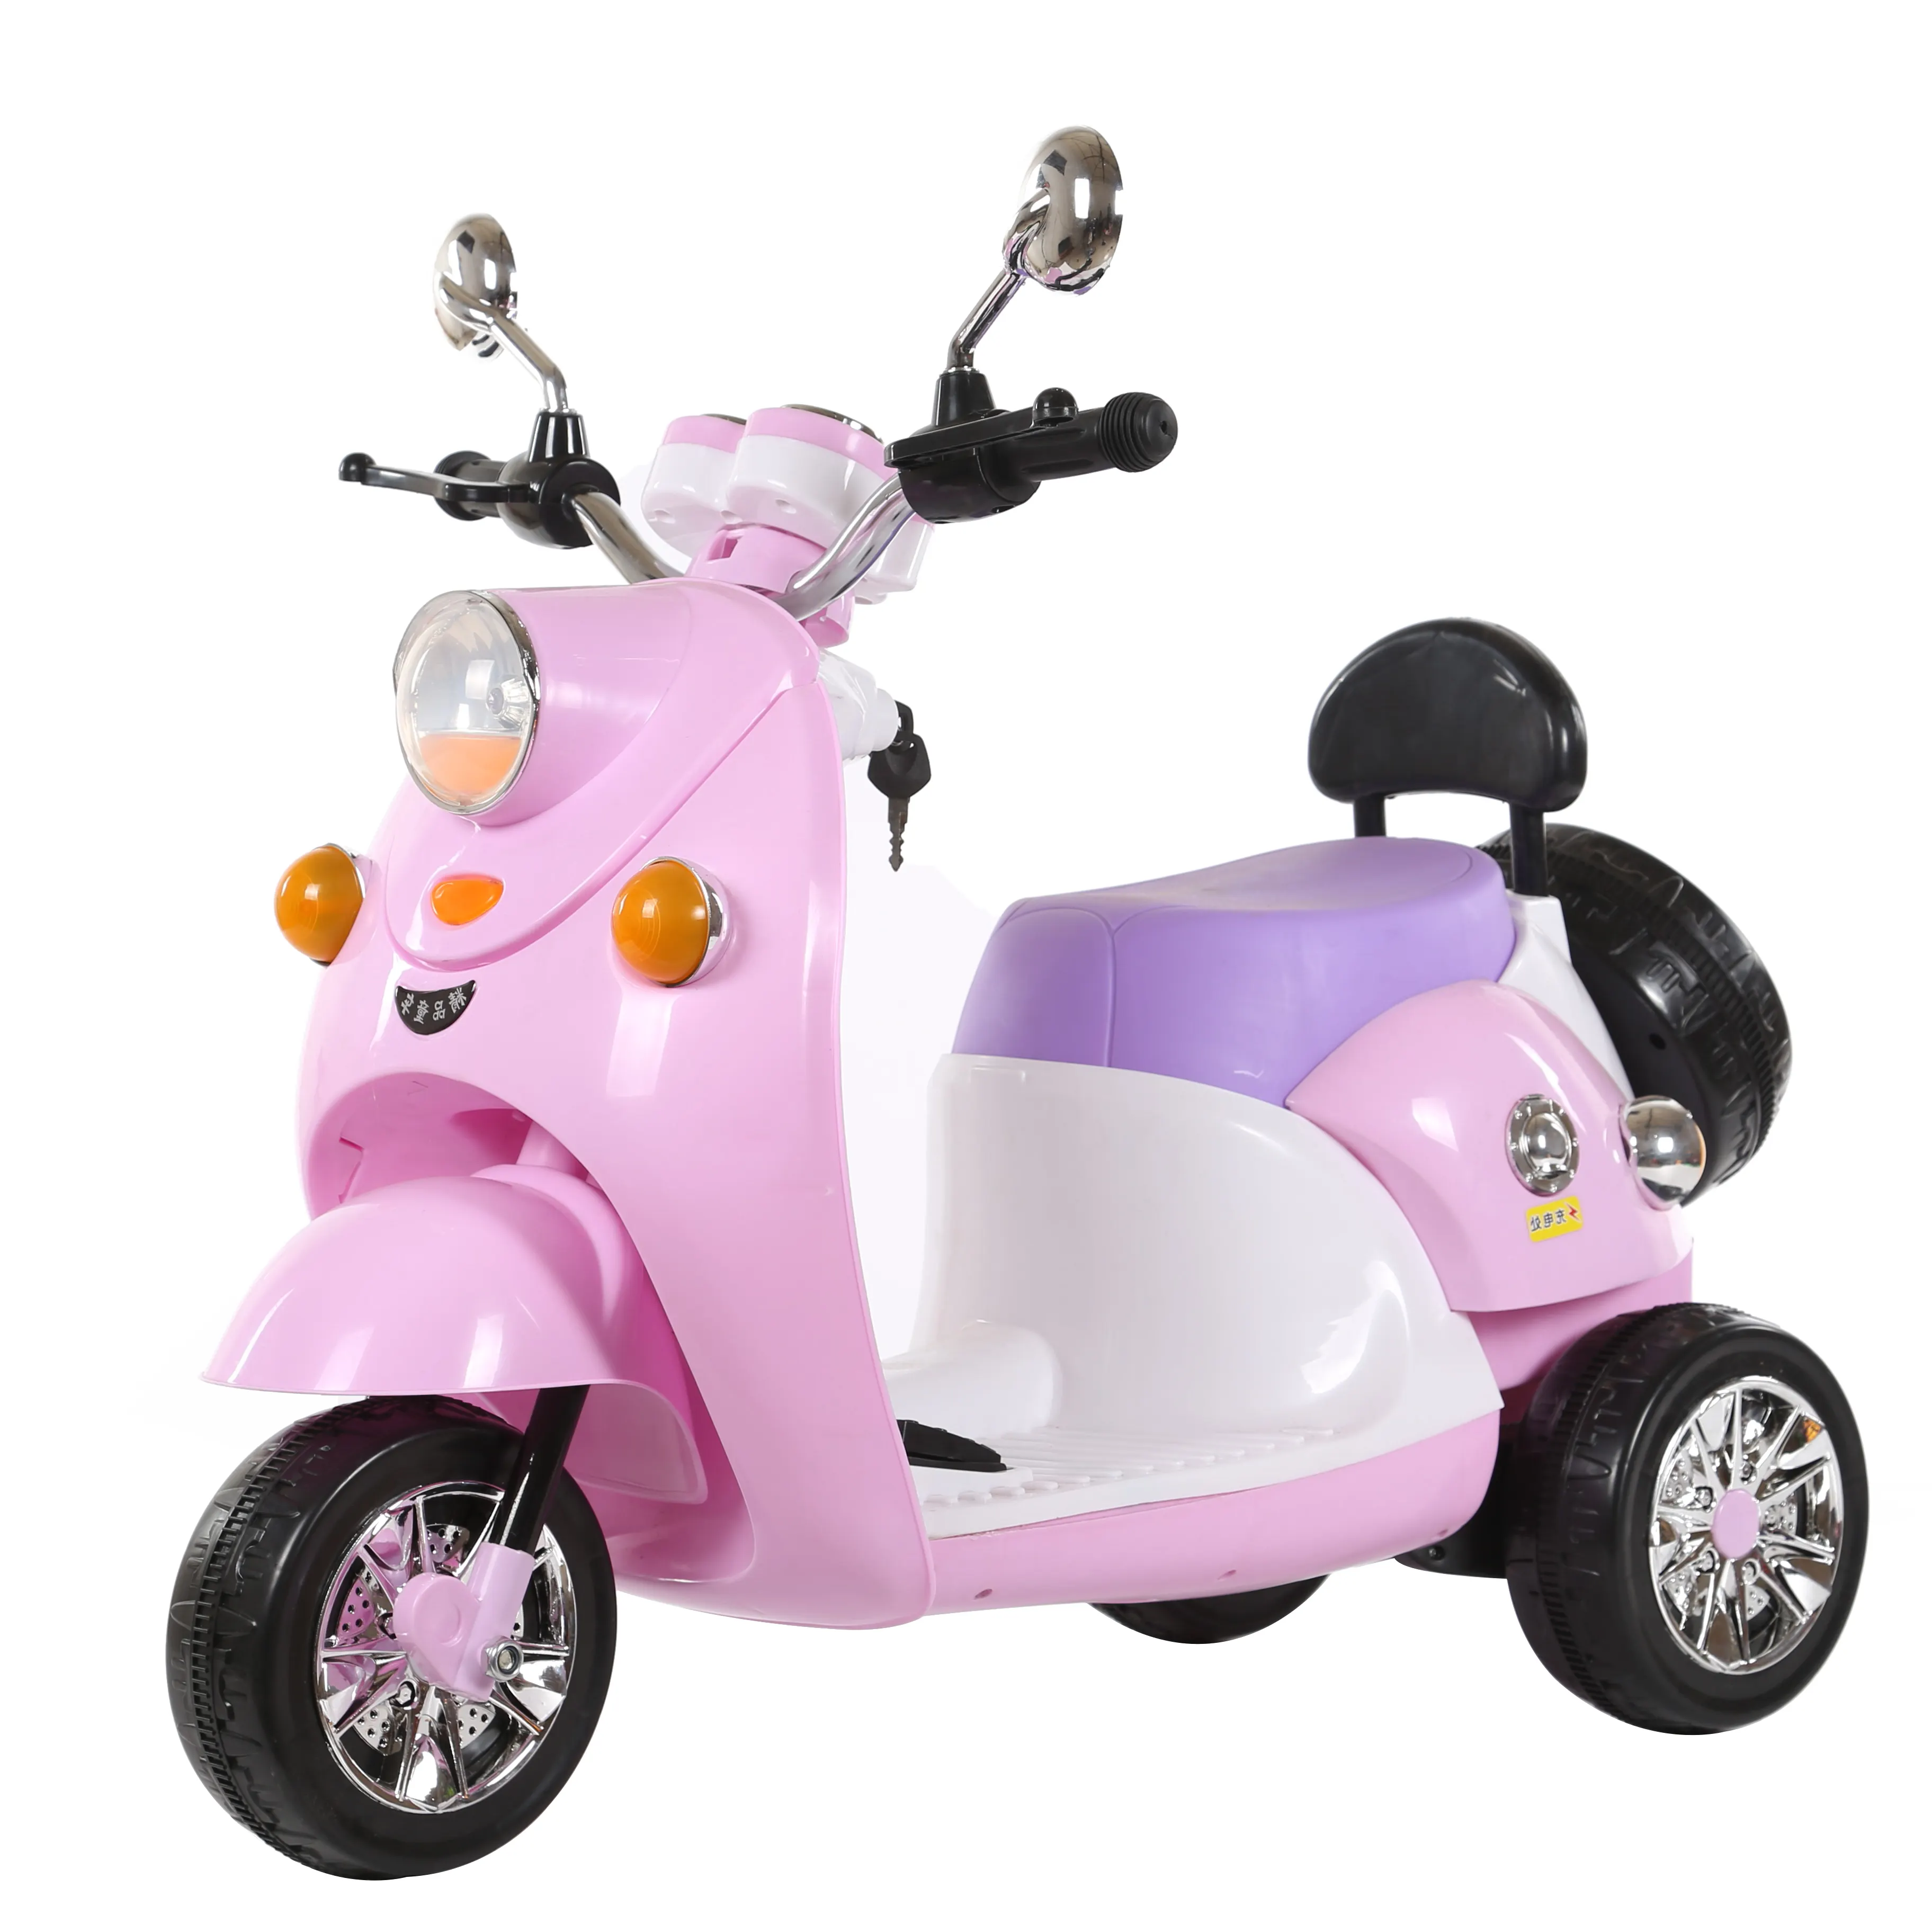 Bestseller Neue Designs Anpassbare Luxus mode Elektro spielzeug Motorrad Mini Elektromotor rad für Kinder